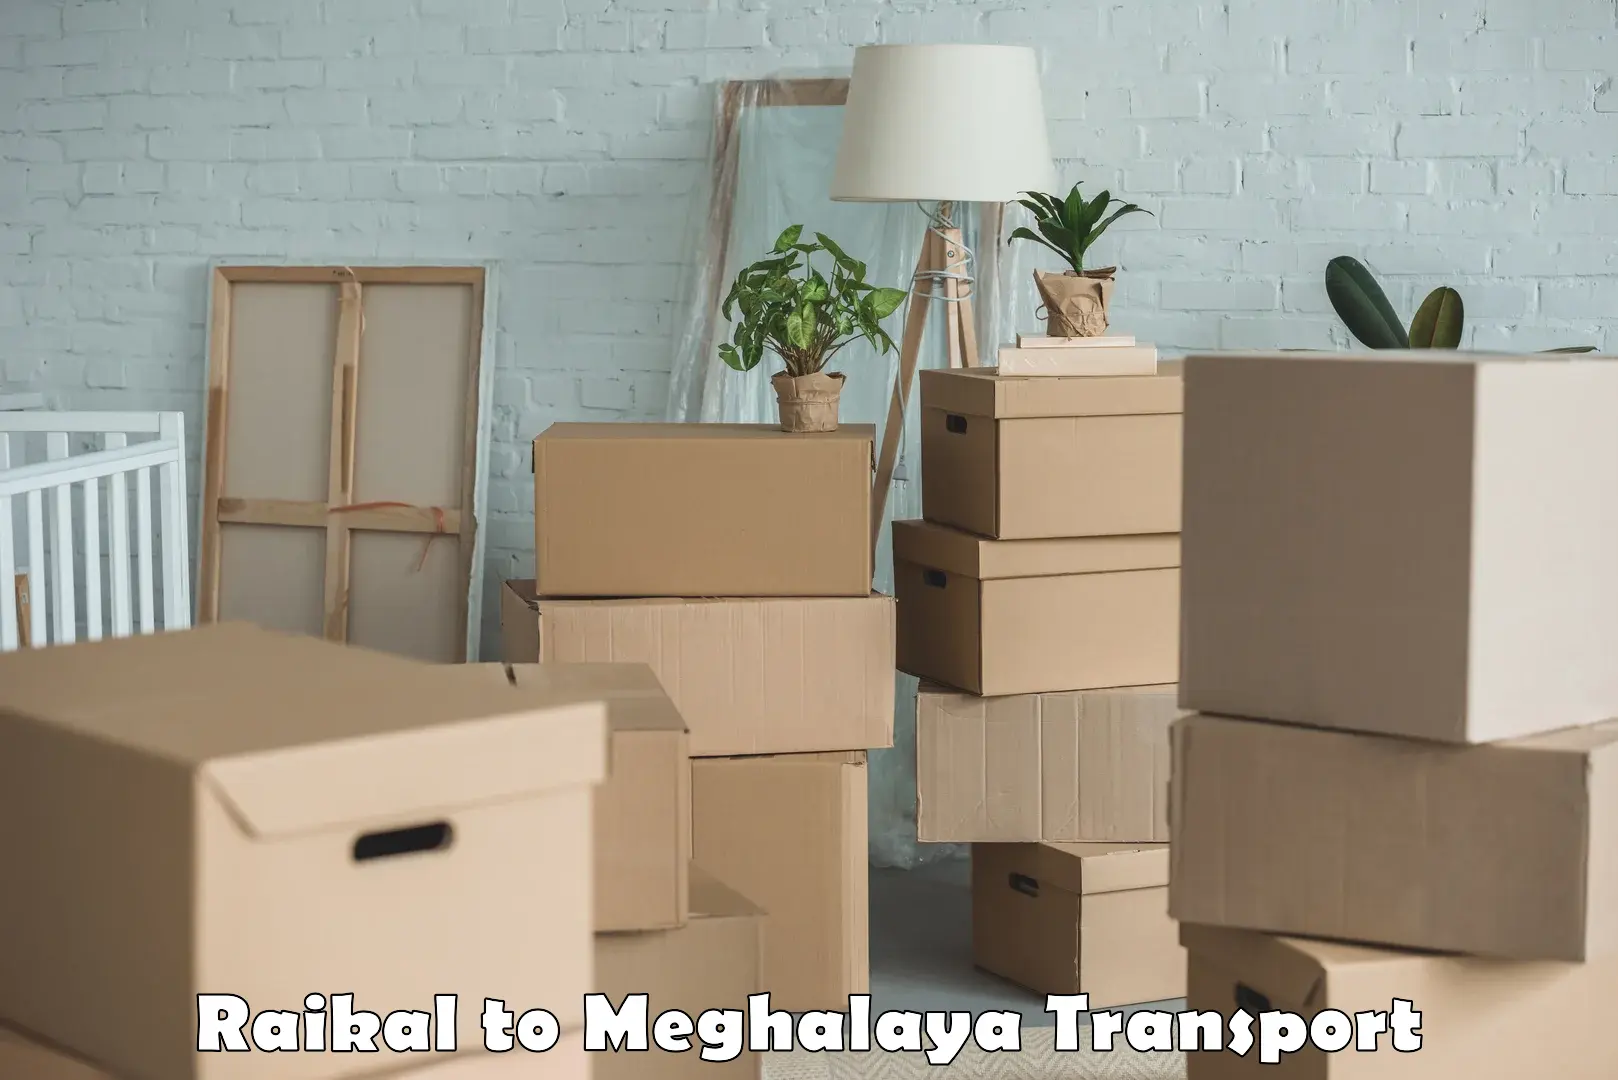 Delivery service Raikal to Meghalaya